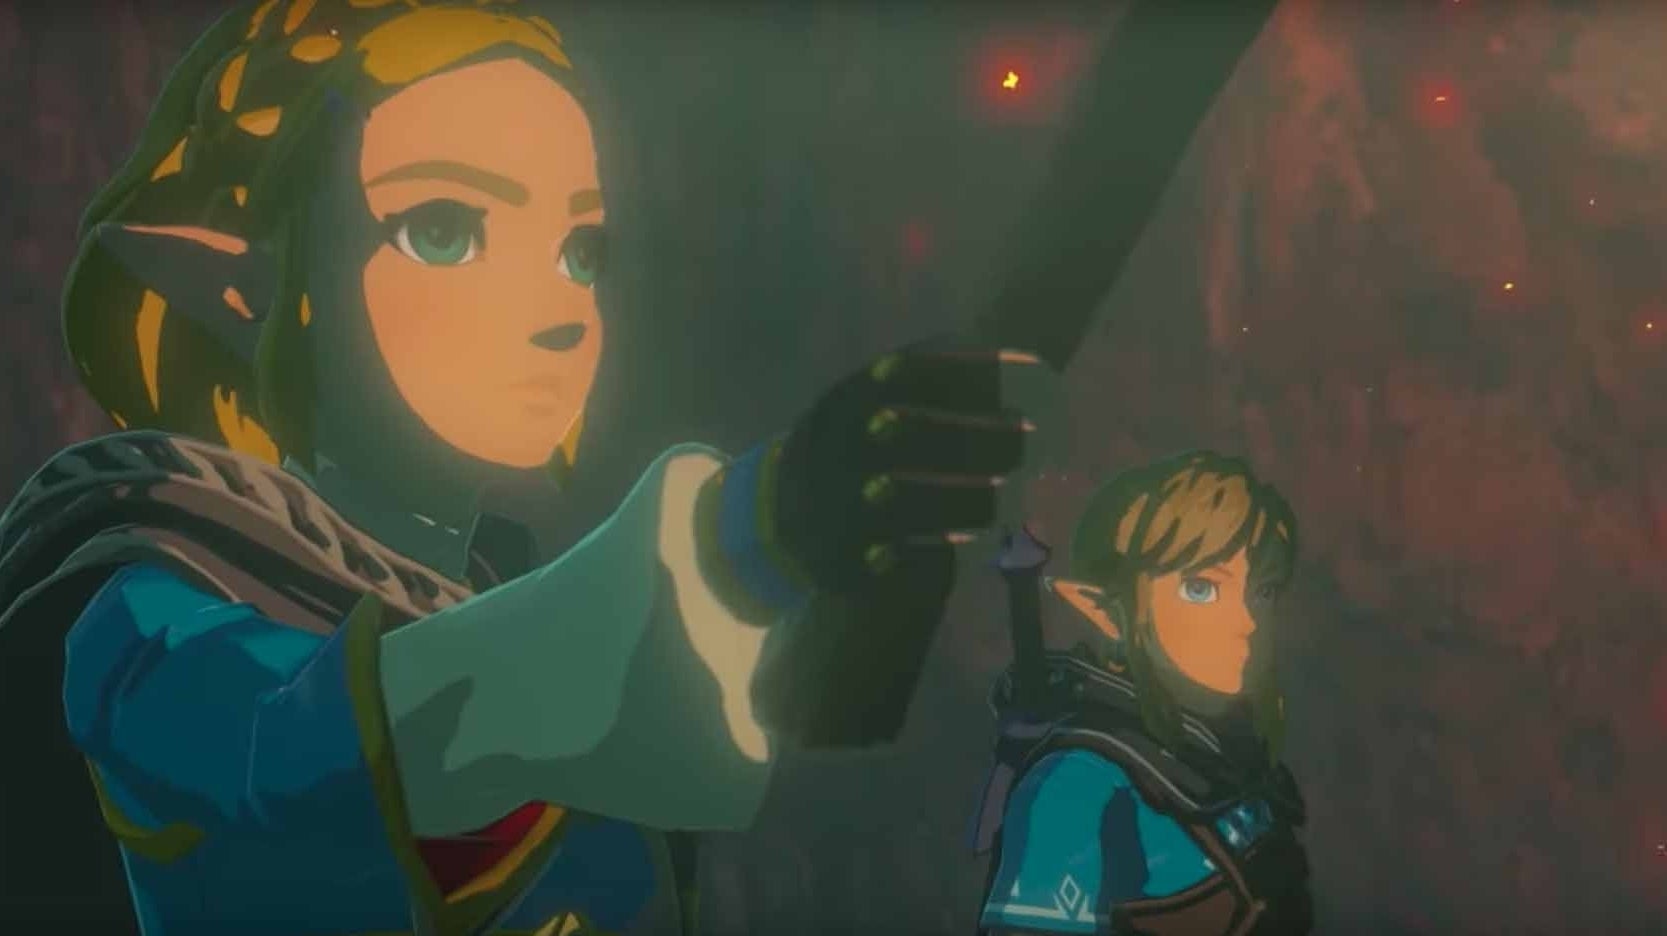 Immagine di Xbox e la previsione sbagliatissima: 'Zelda Breath of the Wild 2 e Metroid Prime 4 escono nel 2020'